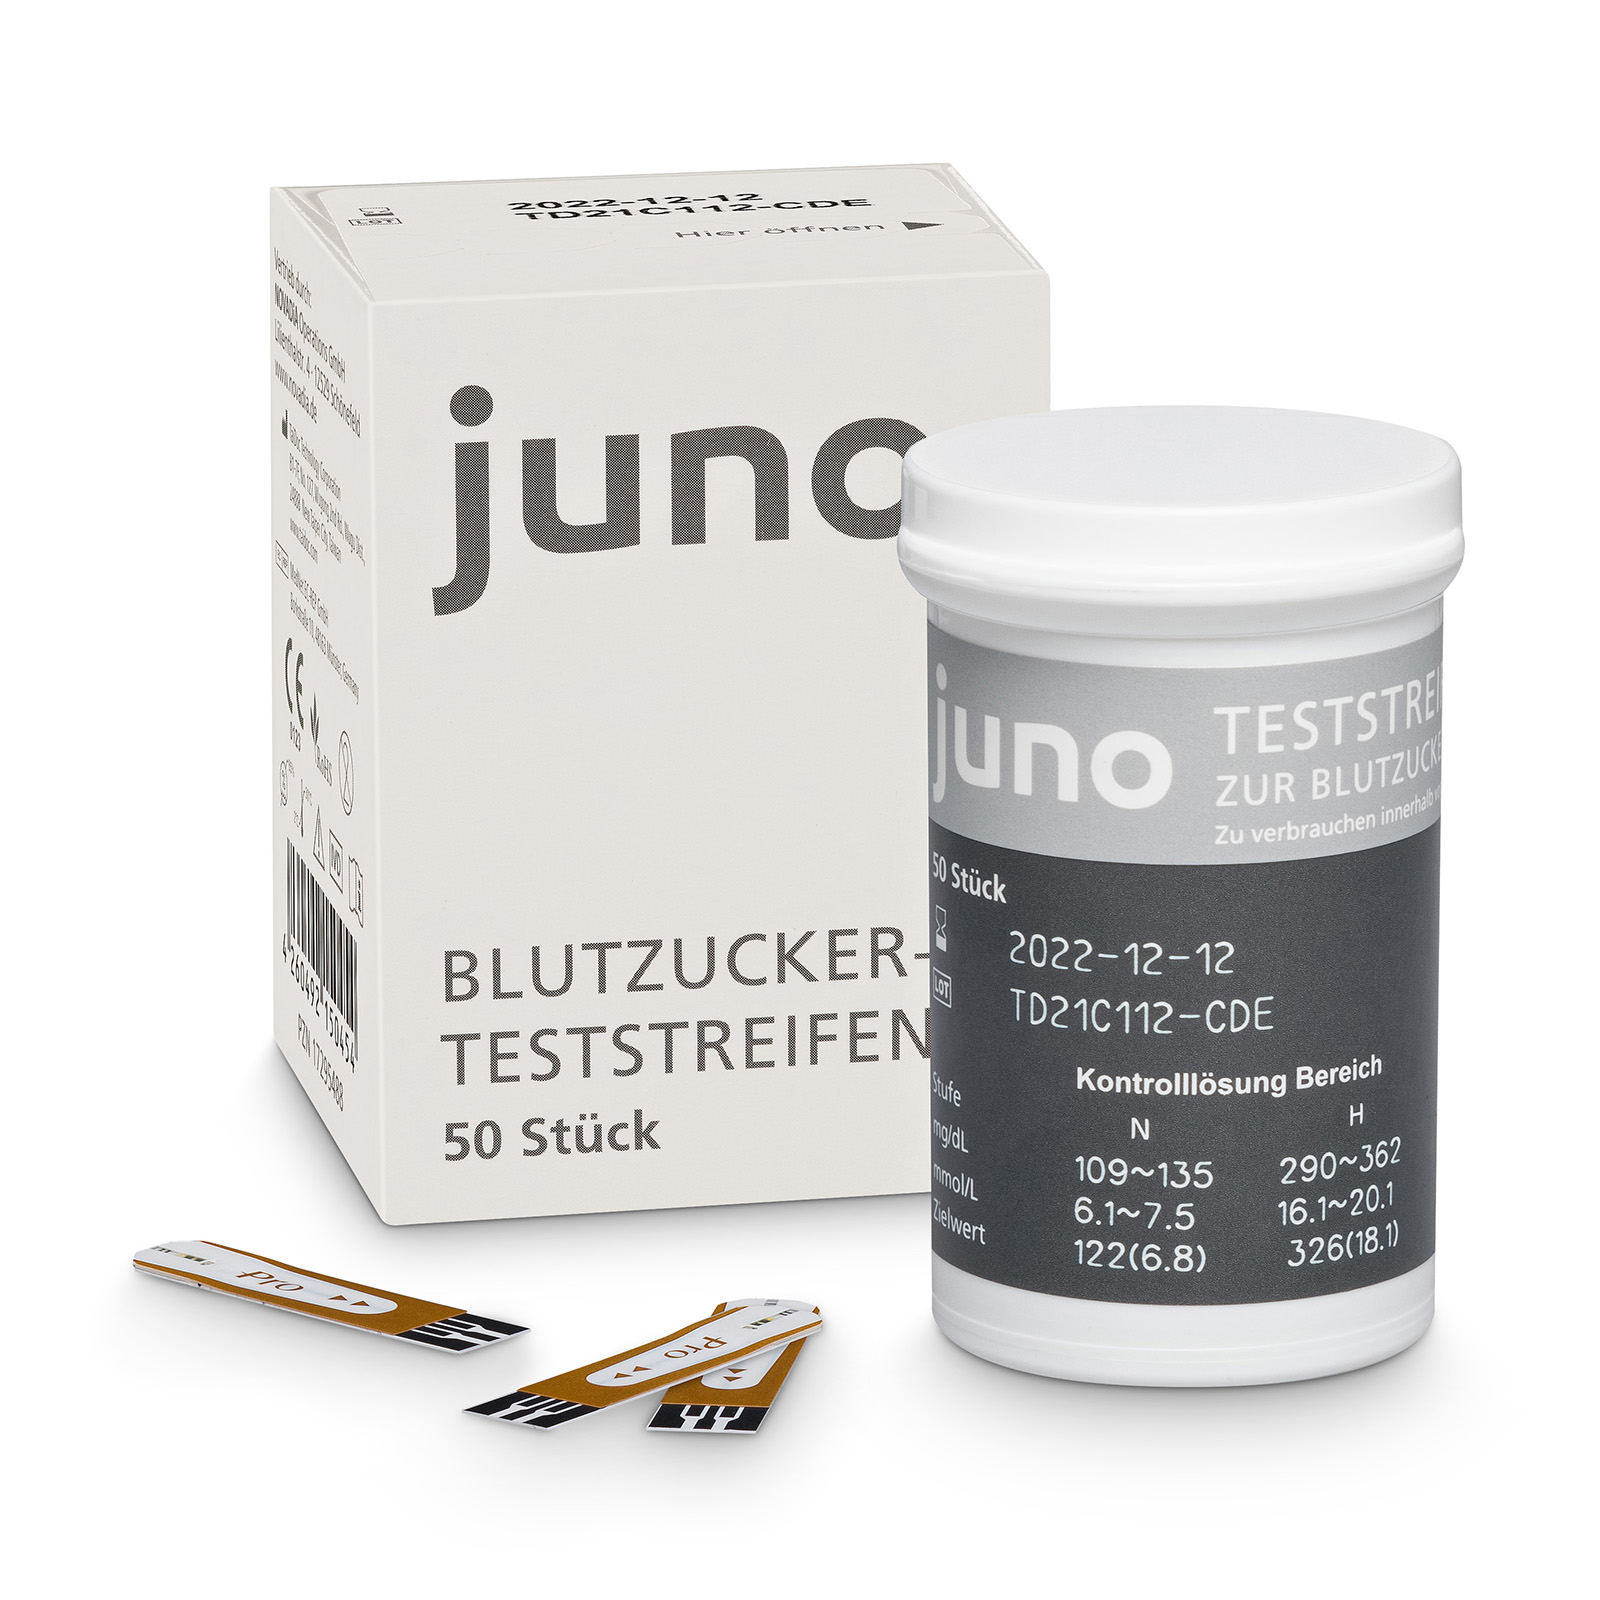 Produkt Foto: juno Blutzucker-Teststreifen